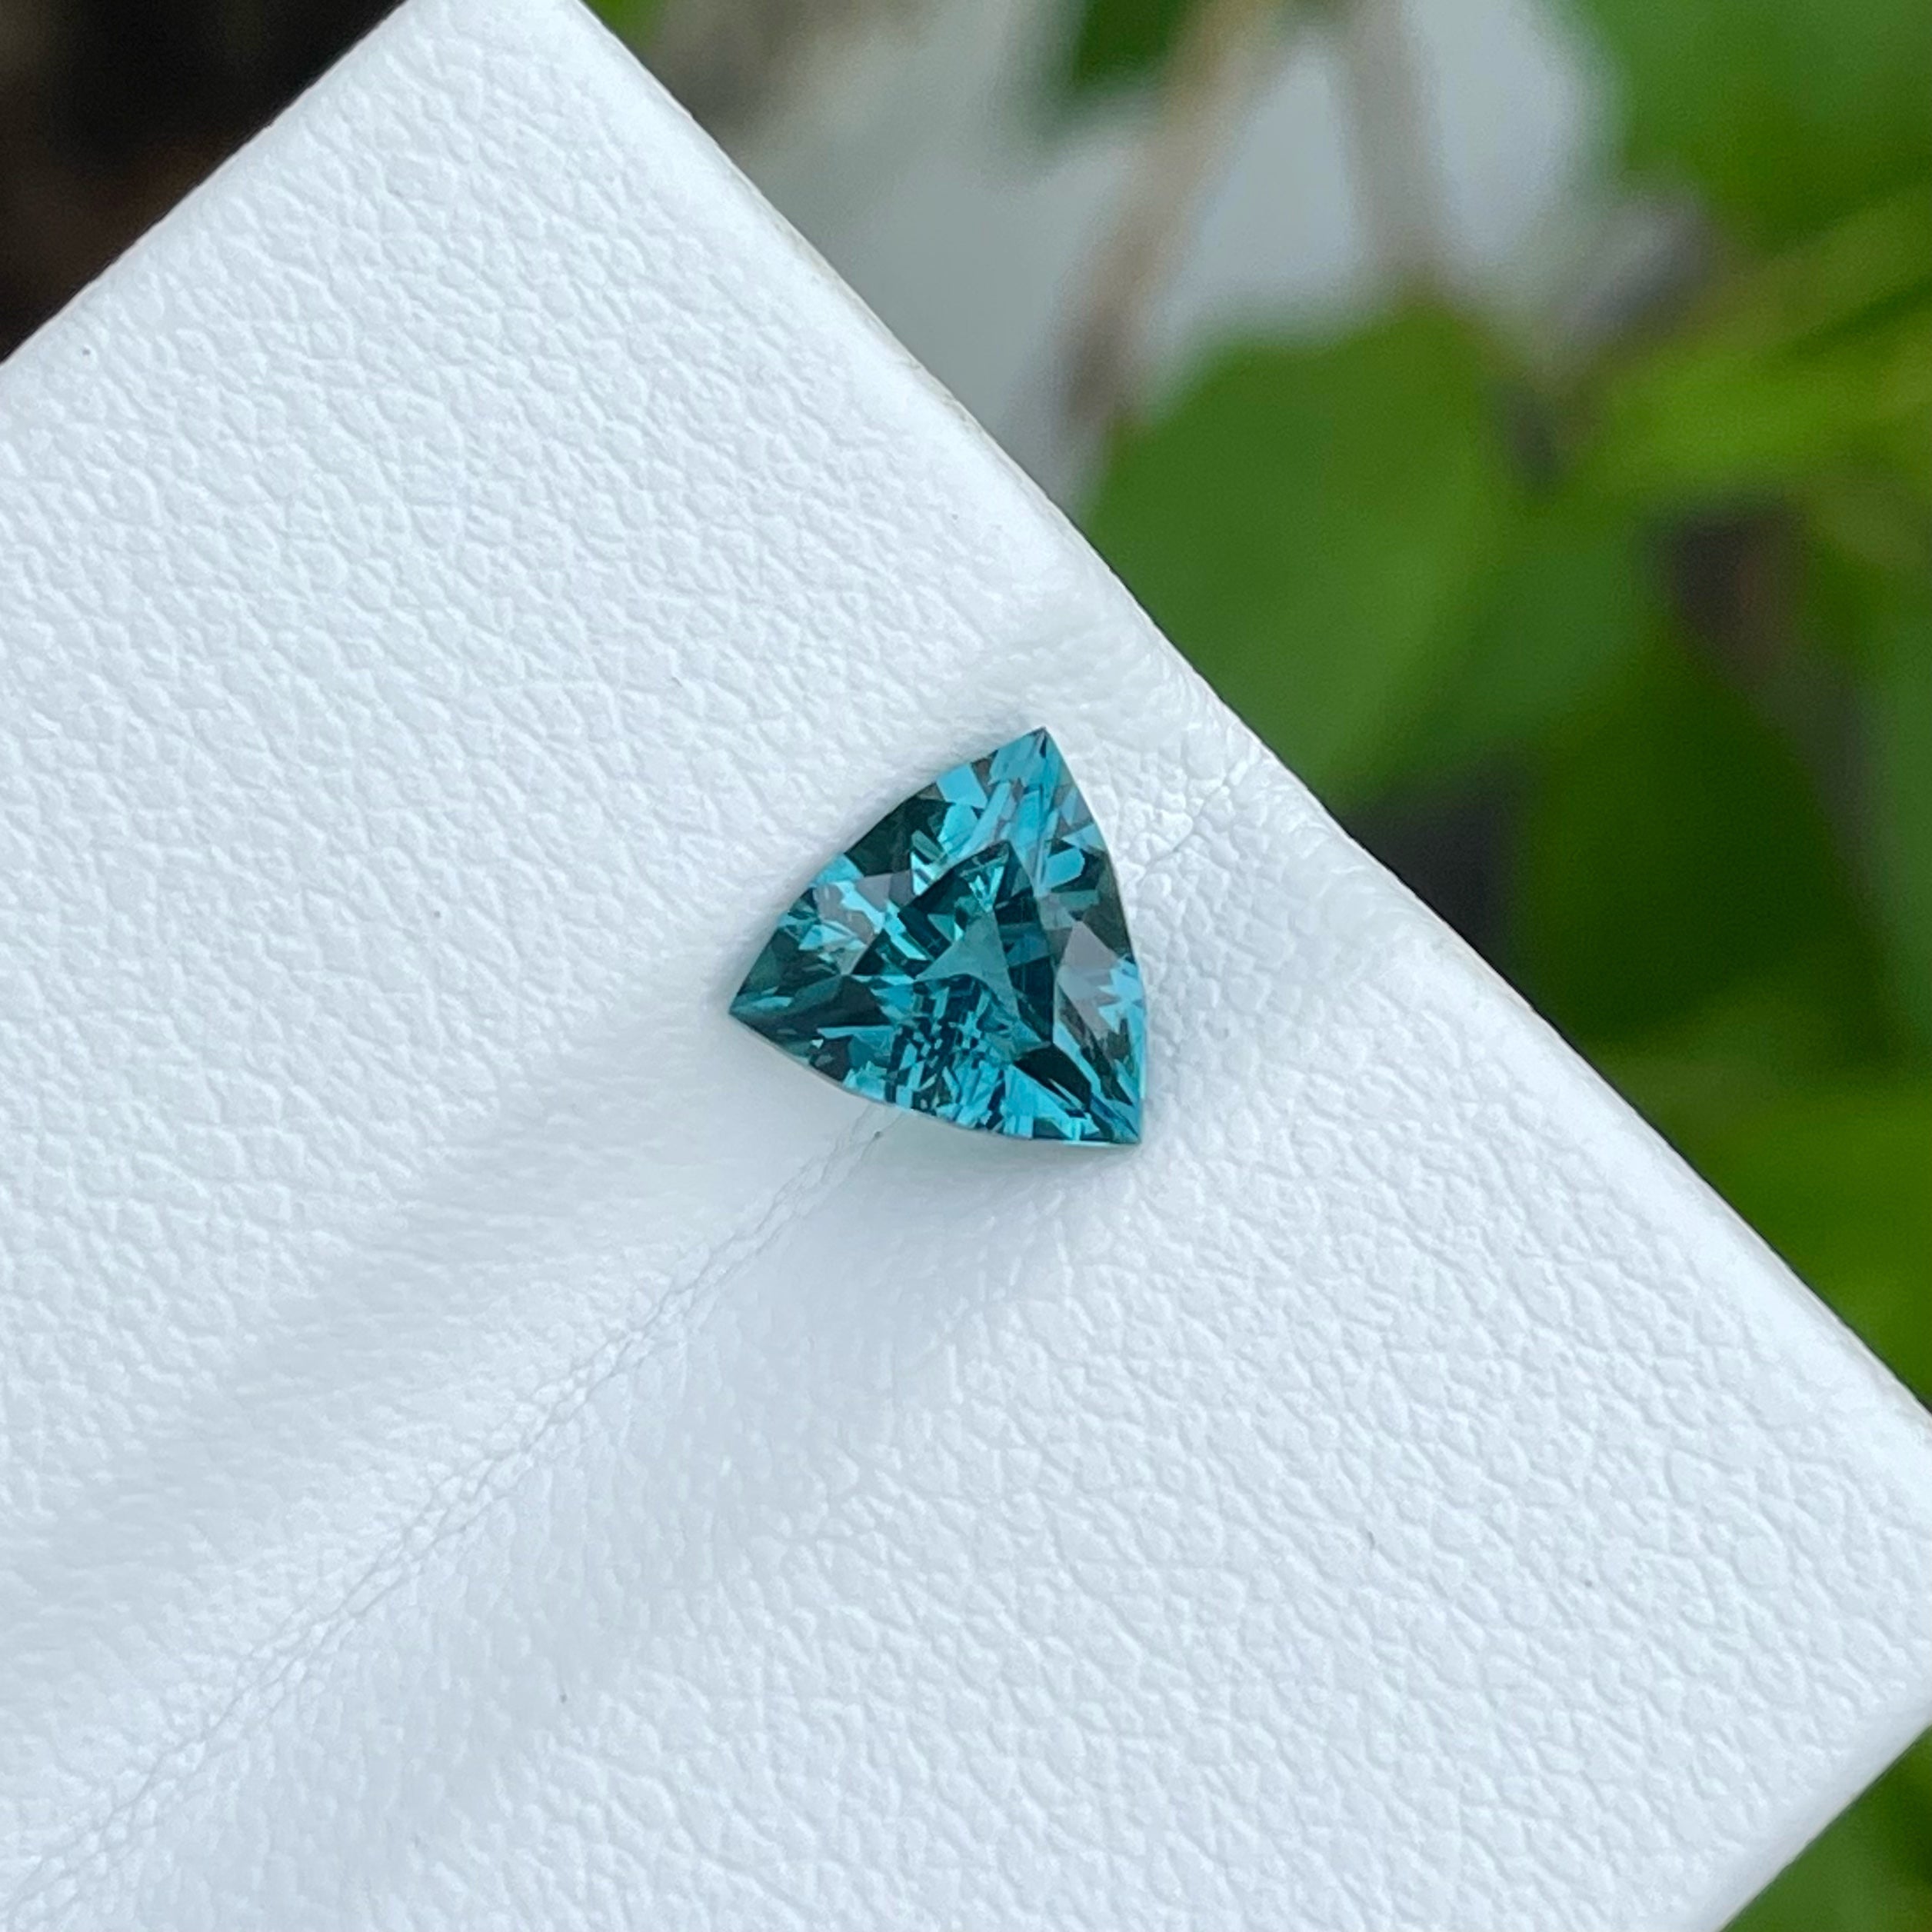 Exceptional Soft Blue Tourmaline Gemstone